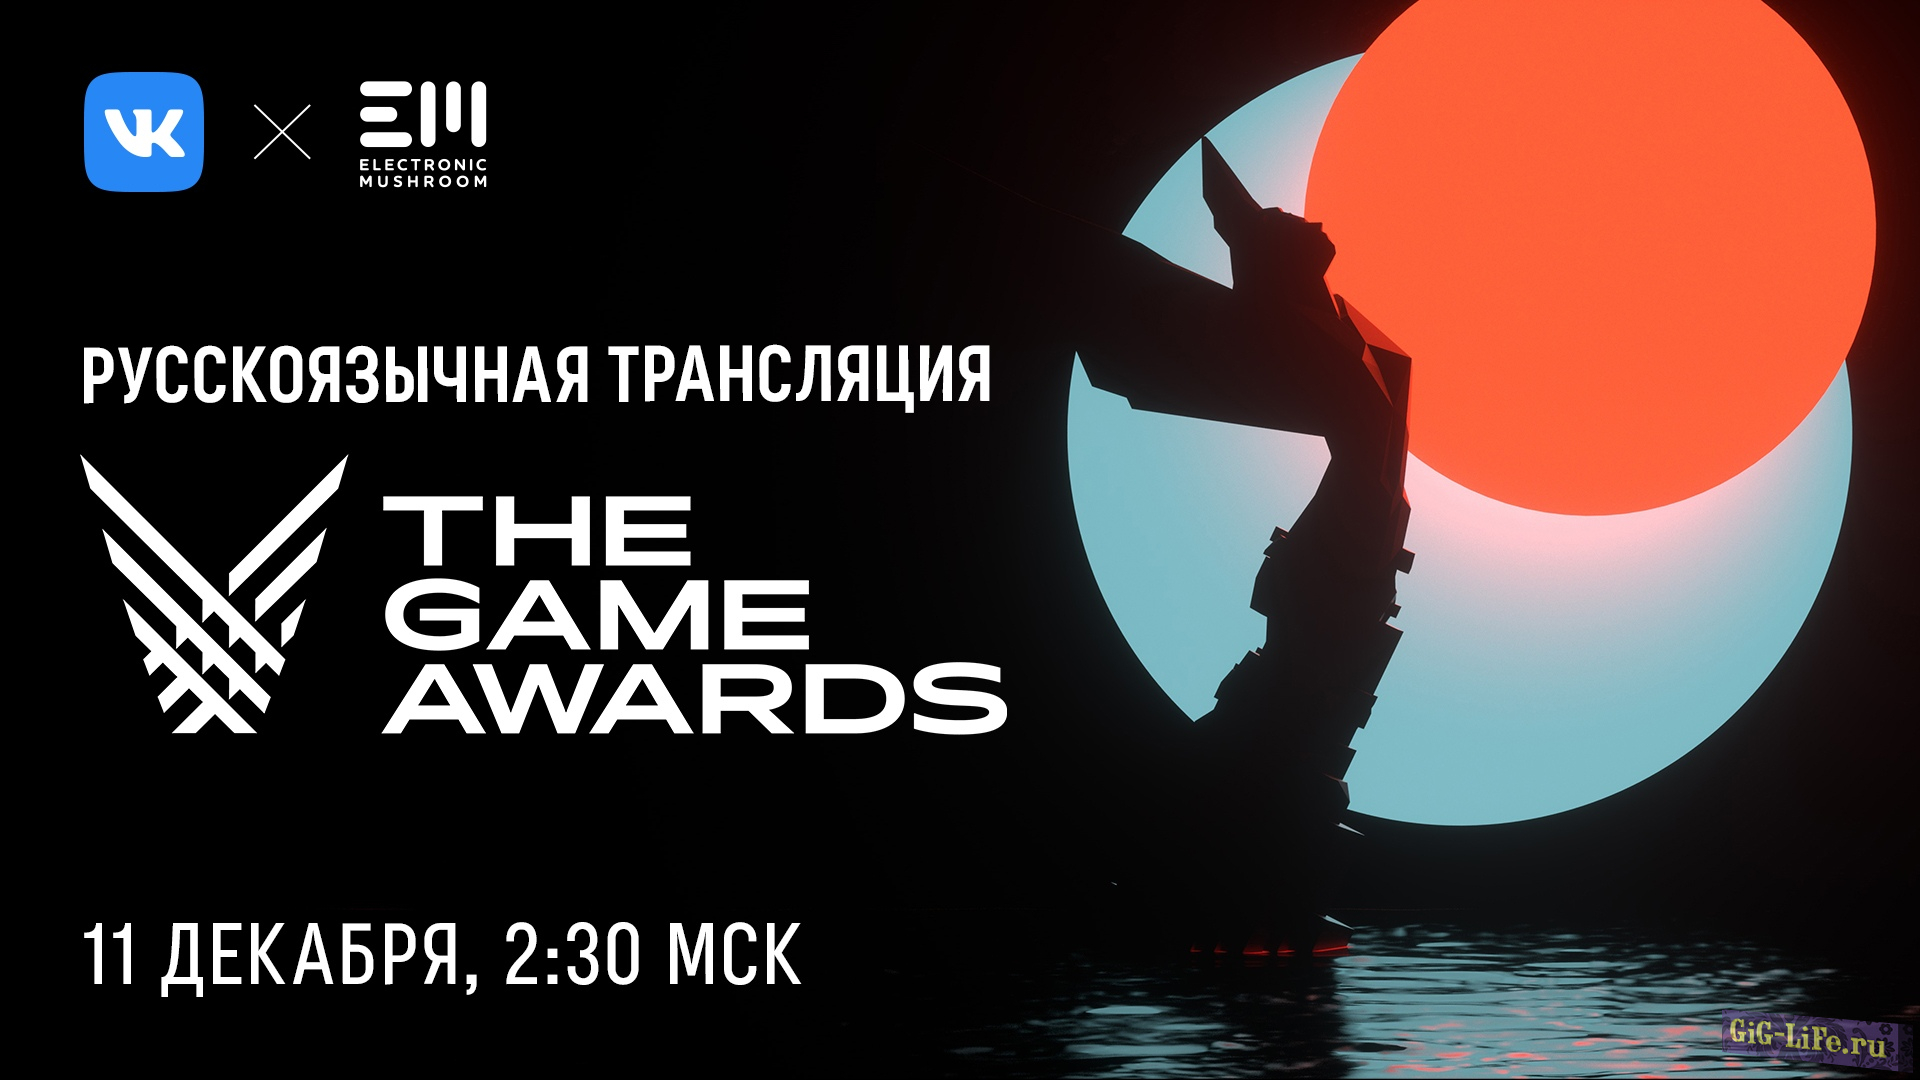 ВКонтакте транслирует одно из главных событий игровой индустрии - церемонию The Game Awards